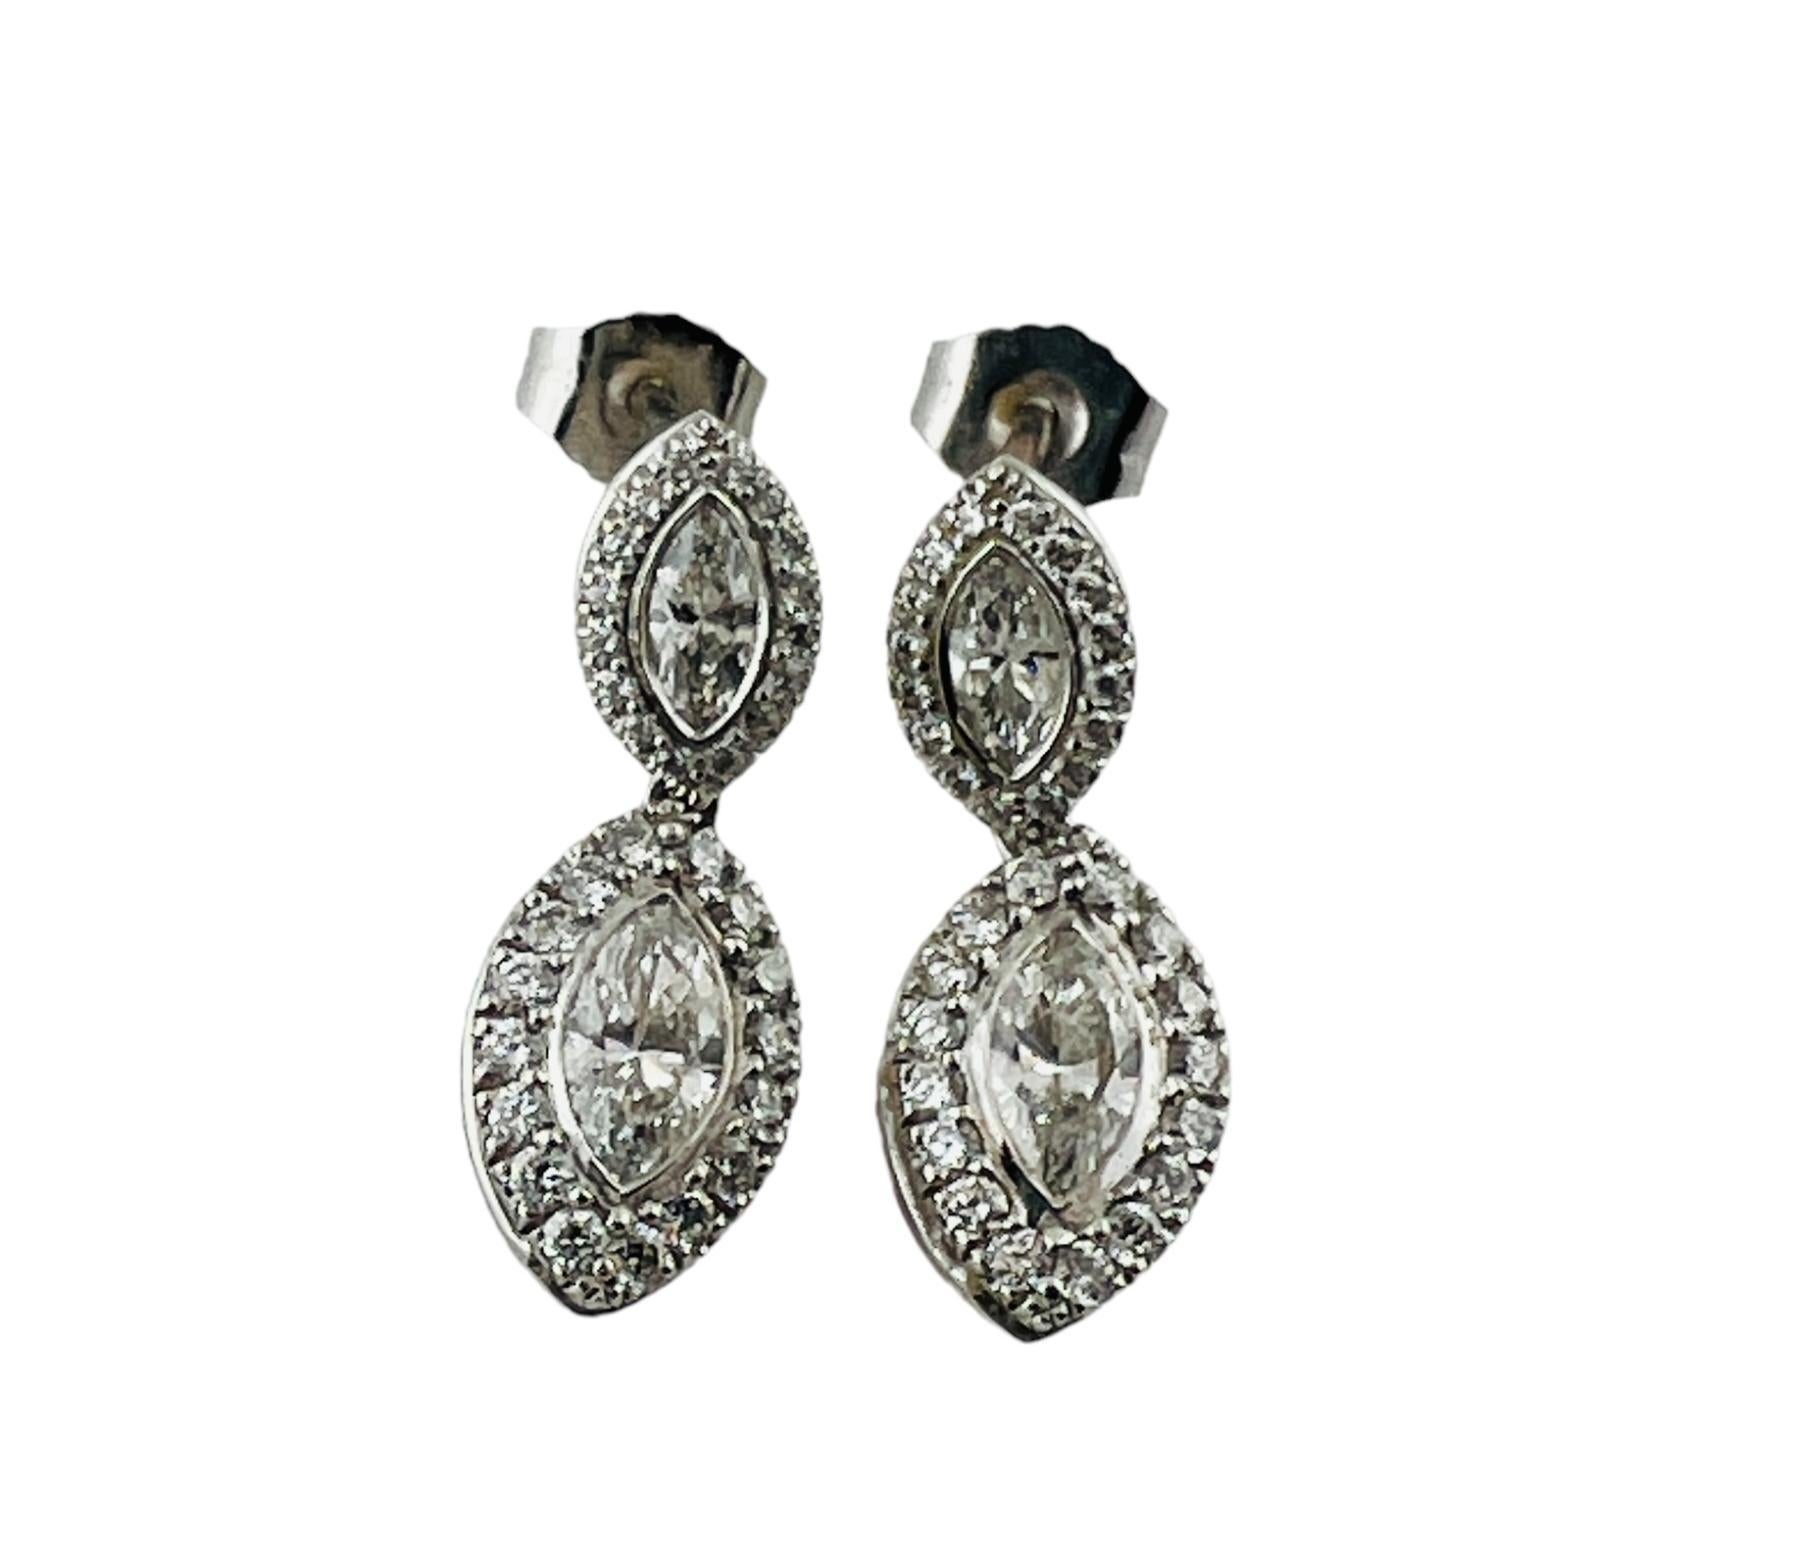 Boucles d'oreilles pendantes en platine et diamants Kwait

Ces superbes boucles d'oreilles pendantes présentent chacune un diamant marquis et 32 diamants ronds de taille brillant sertis dans de l'or blanc 18 carats avec des montants en platine. 